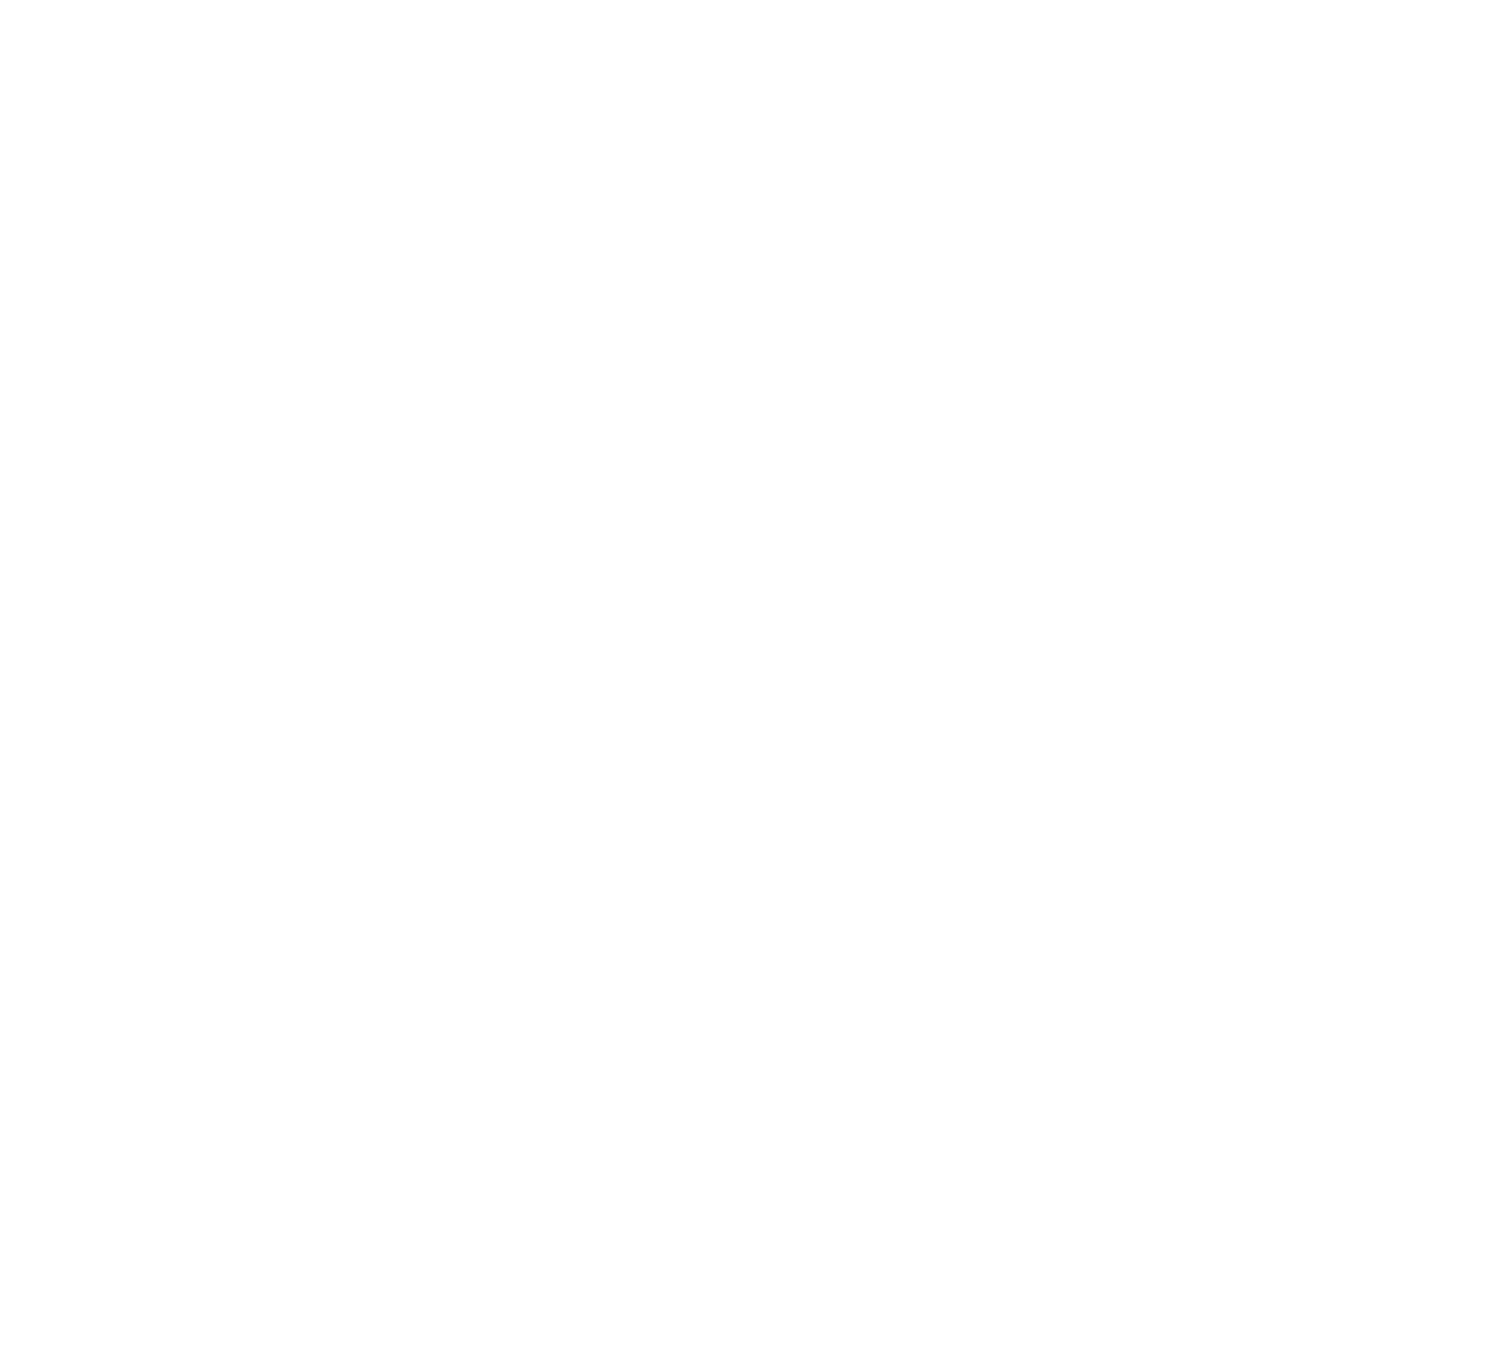 Karte von Kafeeanbau in Brasilien